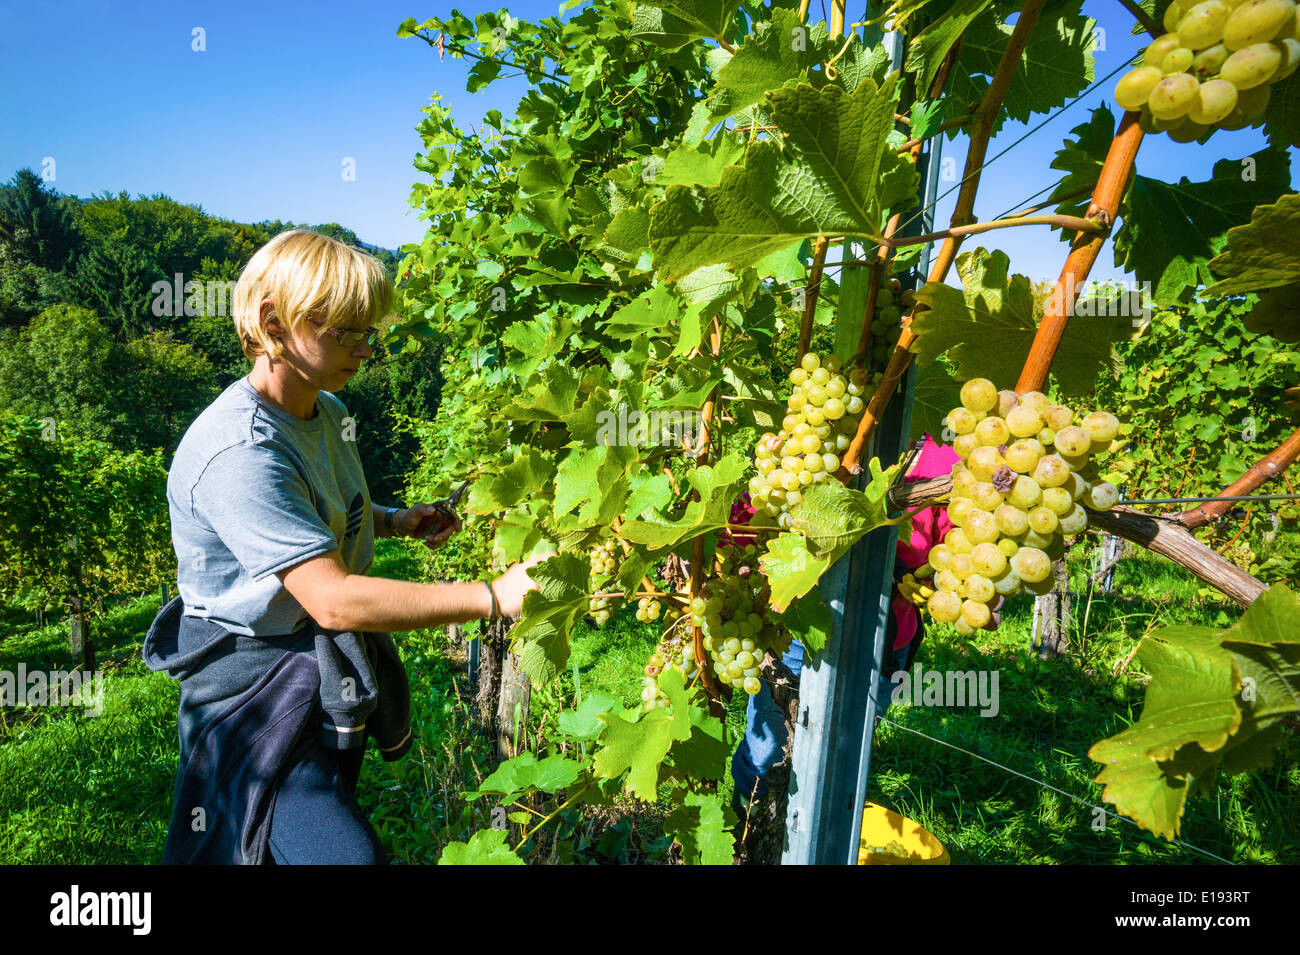 Weinlese im Weinberg eines Winzers. Weingarten im Herbst. Reife Weintrauben werden geerntet. Stock Photo